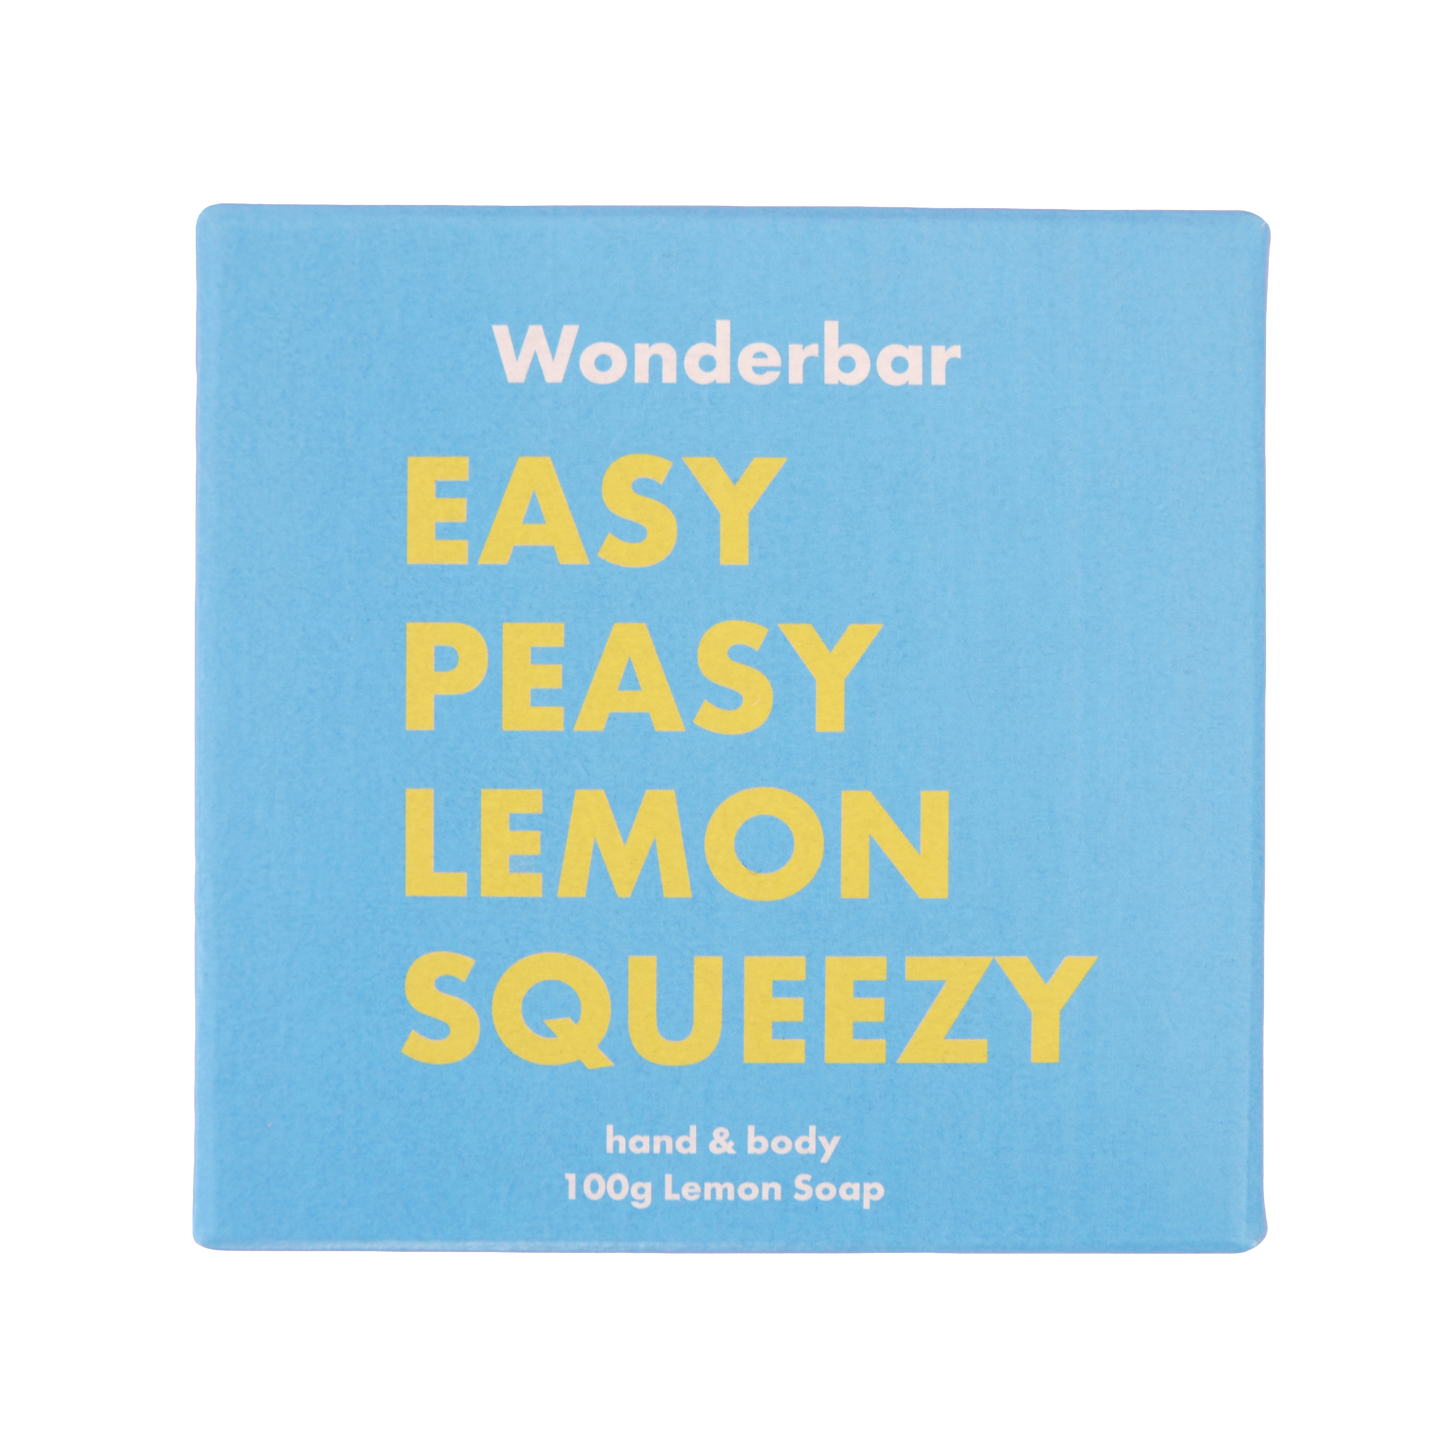 Wonderbar - EASY PEASY LEMON SQUEEZY Lemon Soap 100g